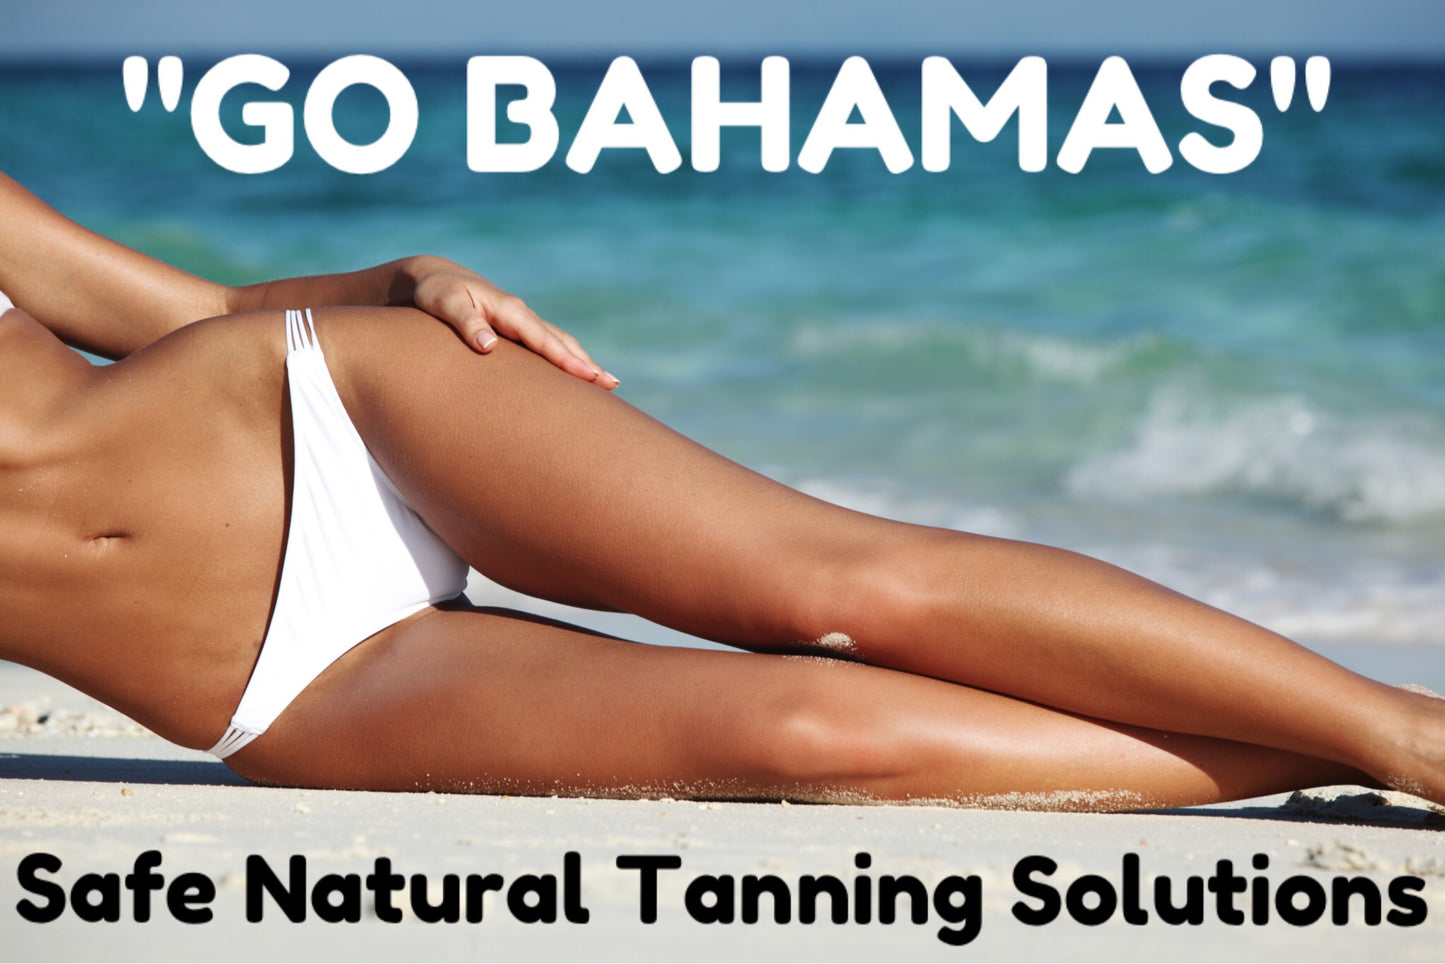 Go Bahamas Spray Tan 9% - 500ml or Litre